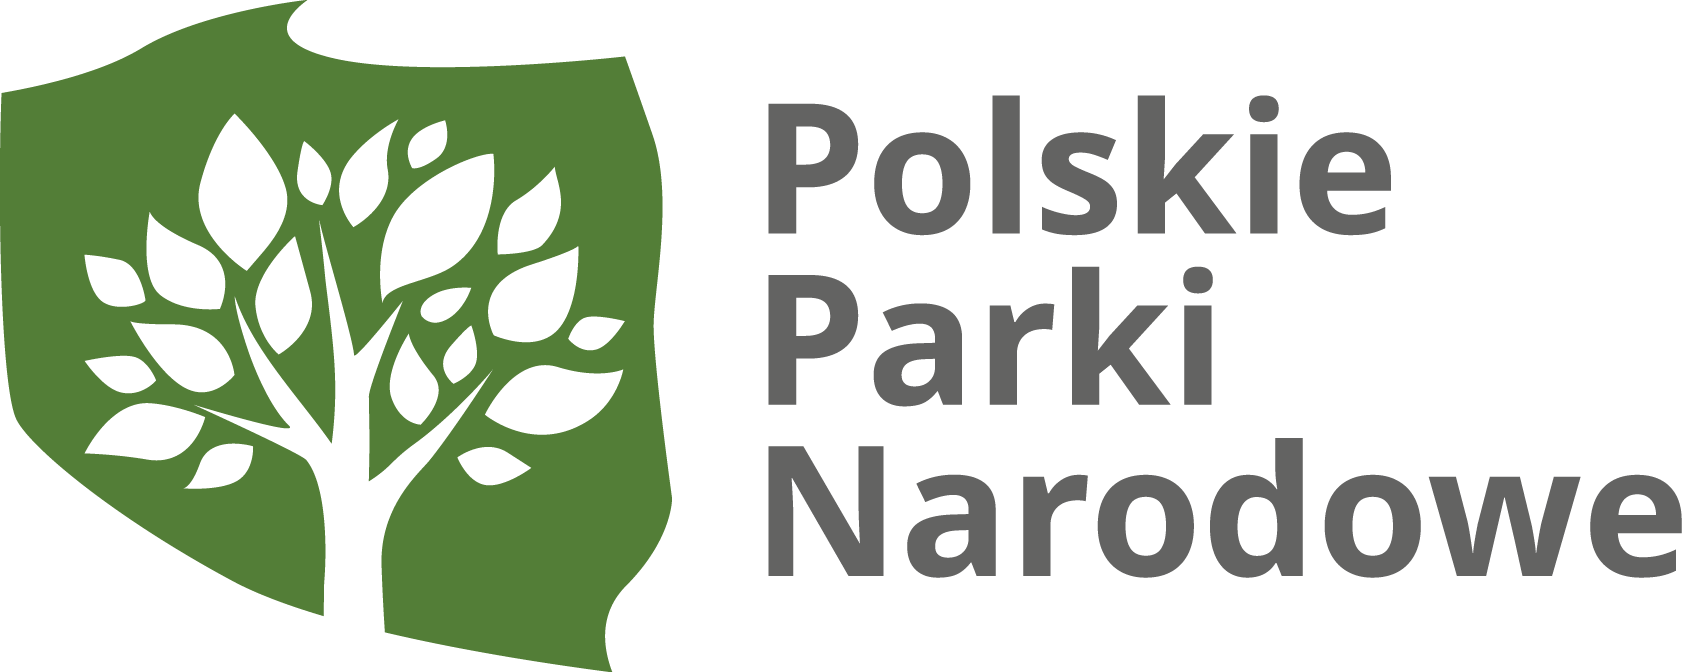 Polskie Parki Nardowe logo